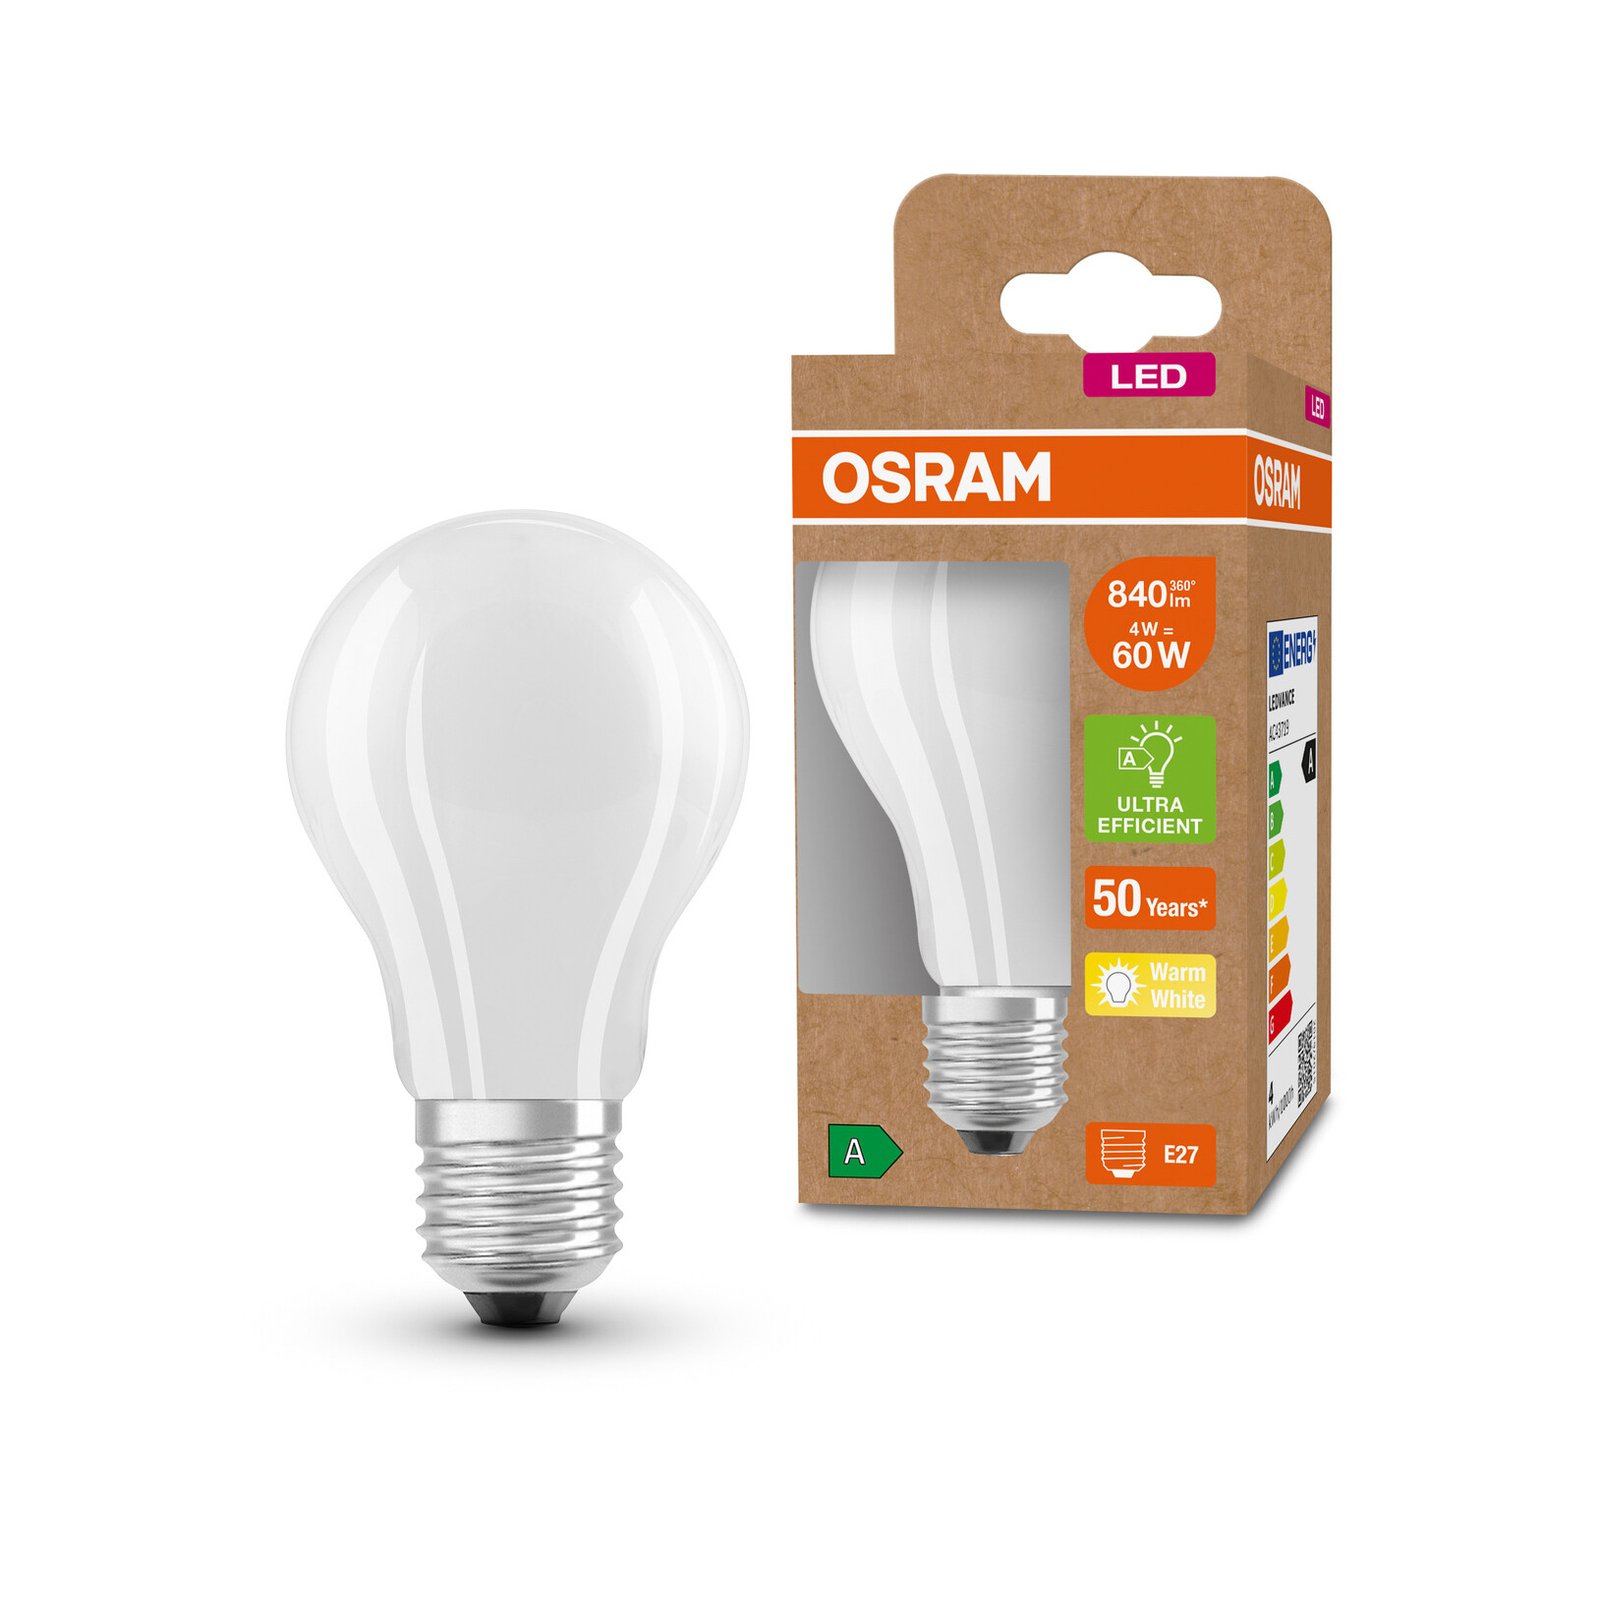 OSRAM ampoule LED E27 A60 3,8W 840lm 3.000K mat